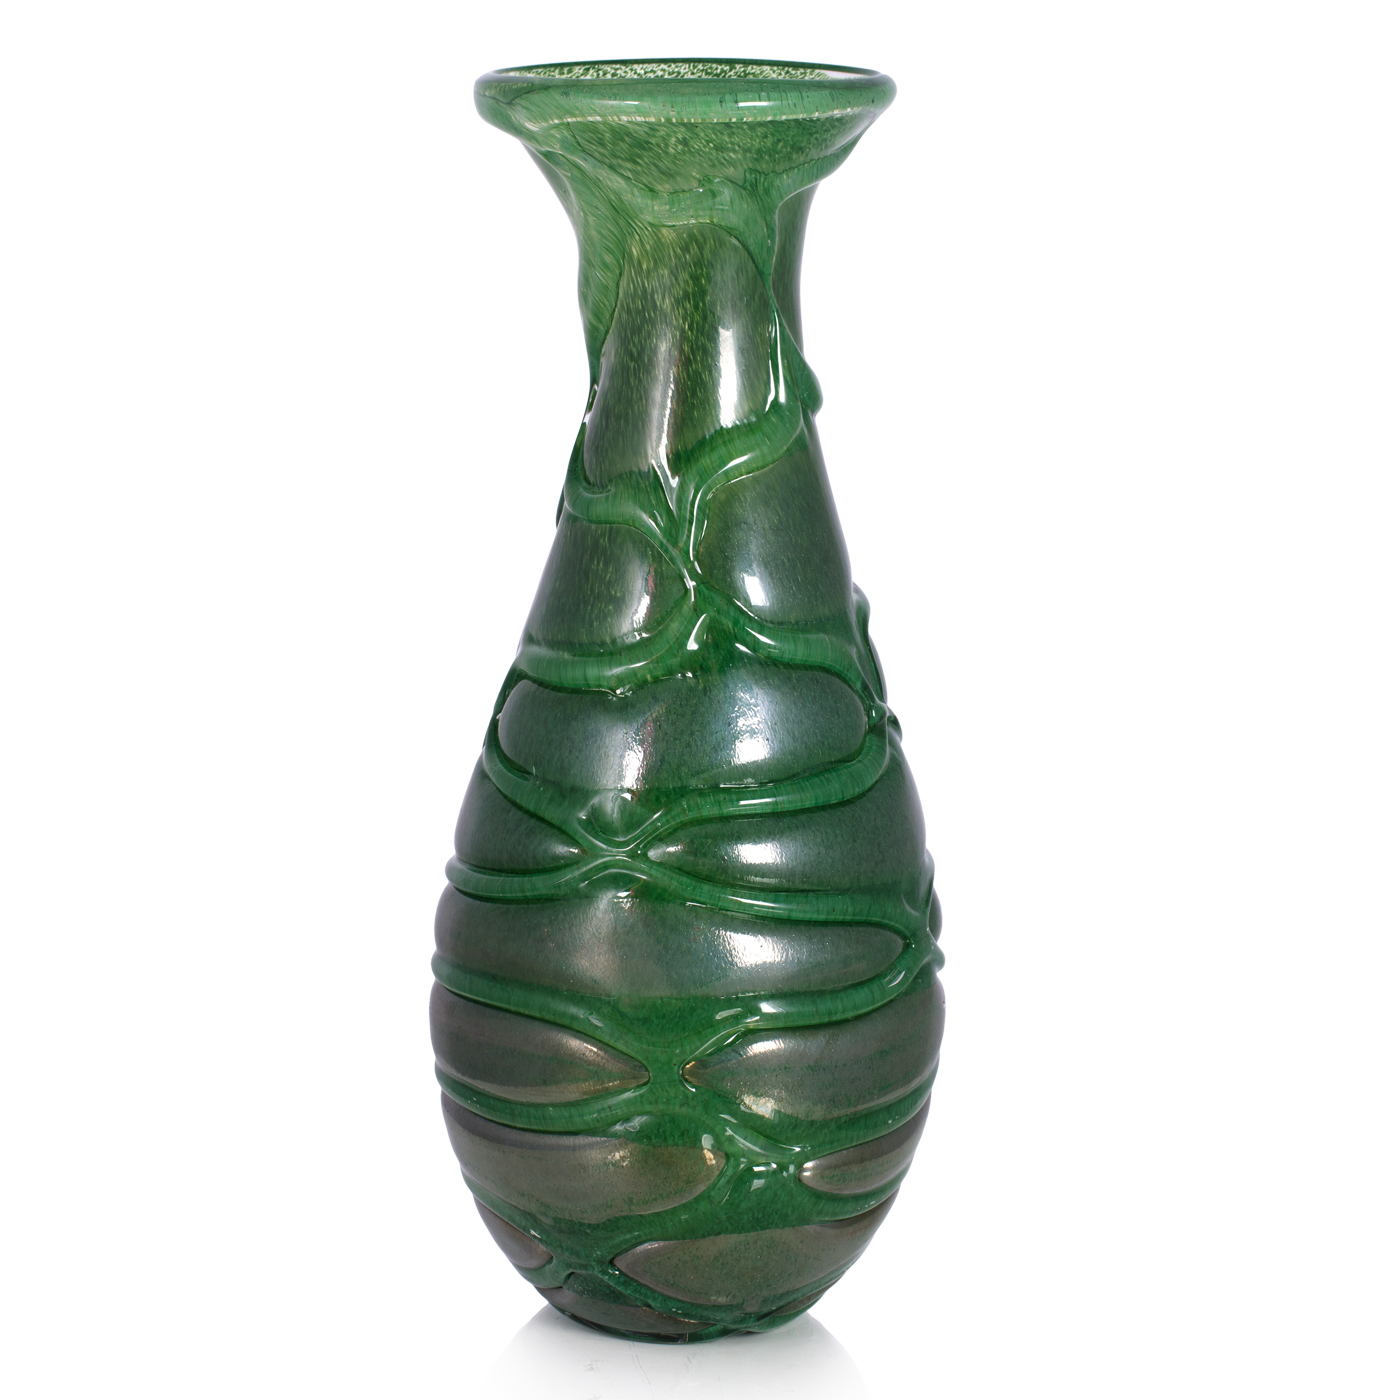 вазы из зеленого стекла для интерьера